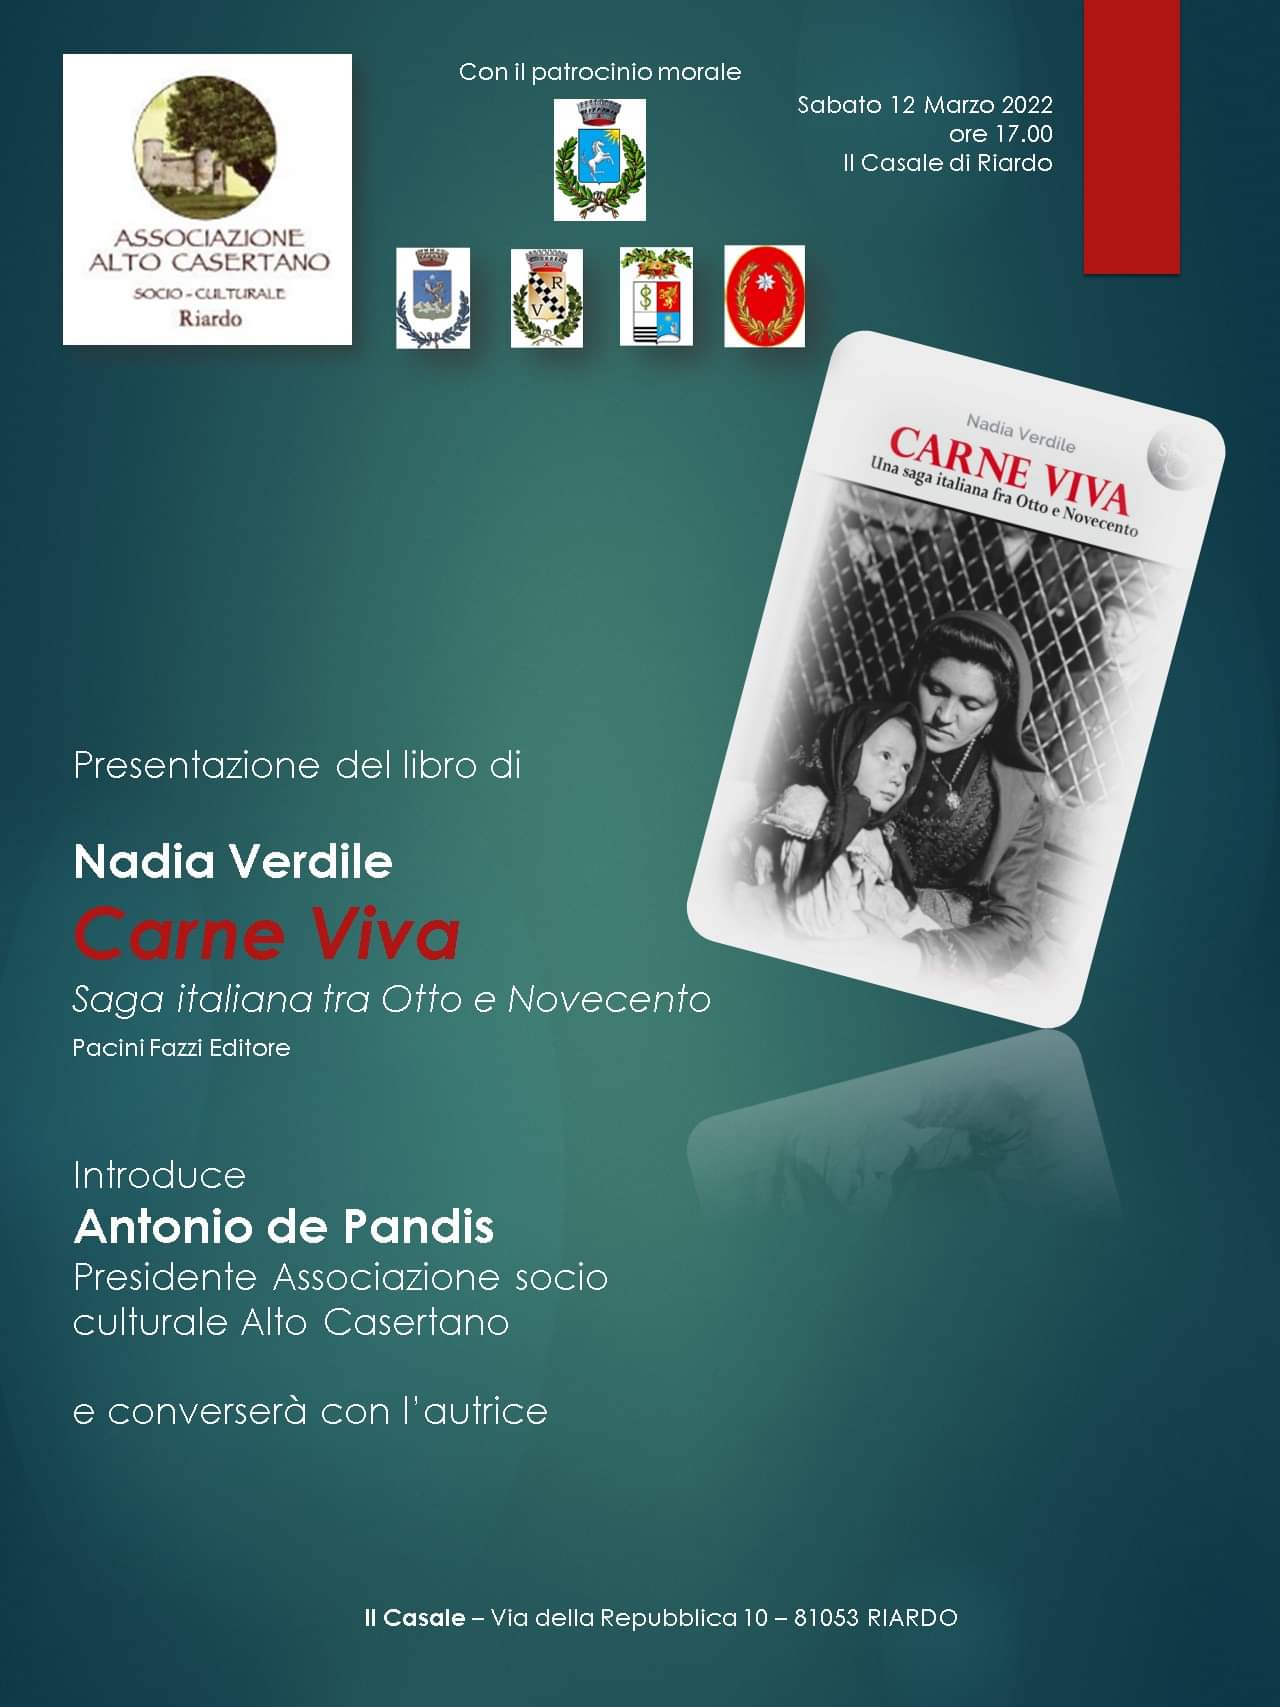 Sabato  12 marzo 2022 ,ore 17 .00 Casale di Riardo,presantazione del libro di Nadia Verdile :”Carne Viva”introduce Antonio De Pandis